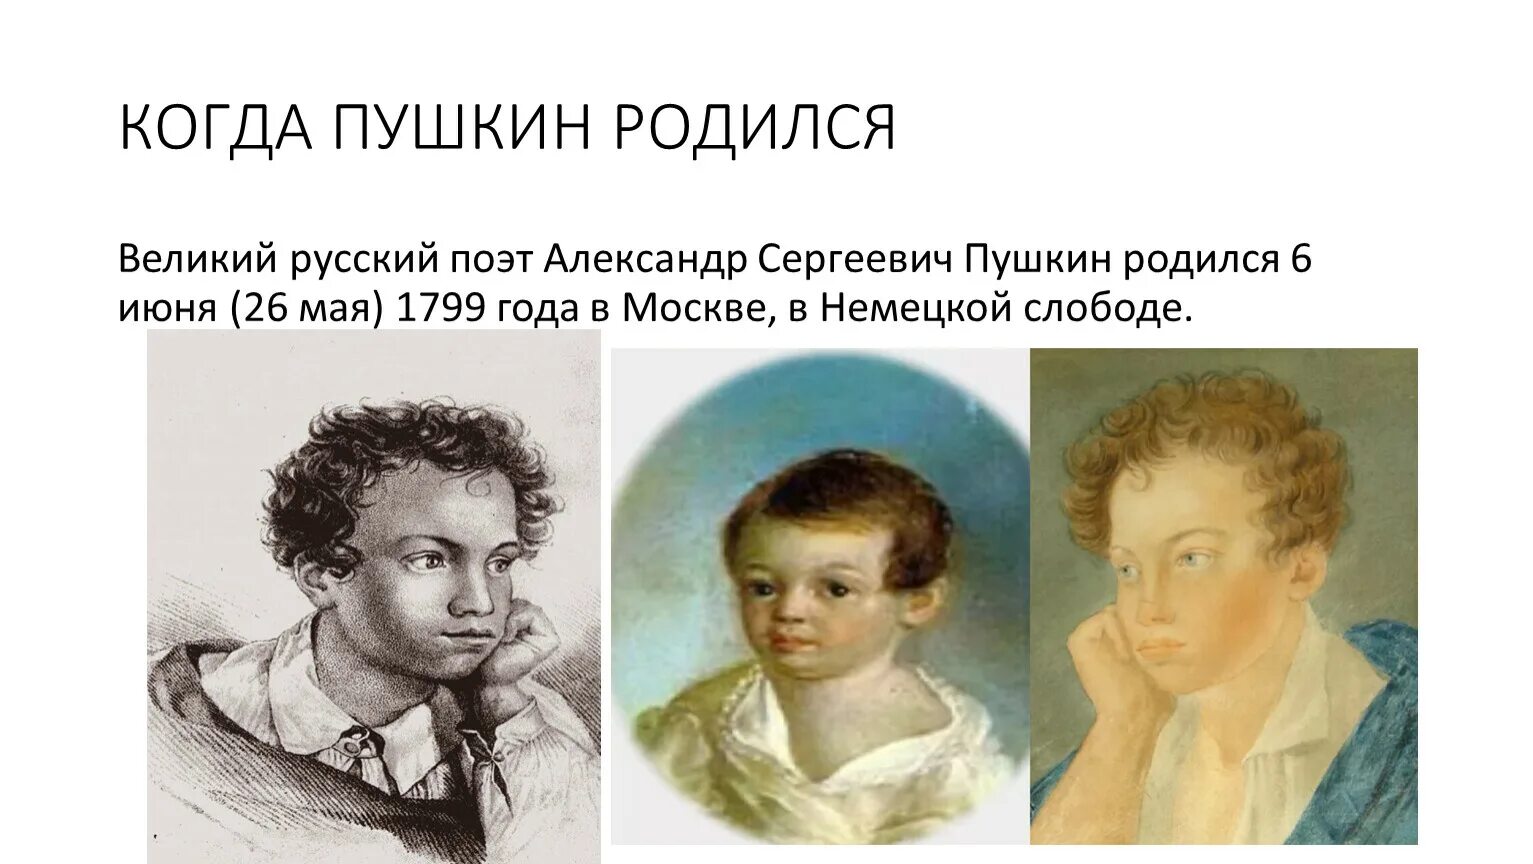 Когда александру пушкину исполнилось одиннадцать